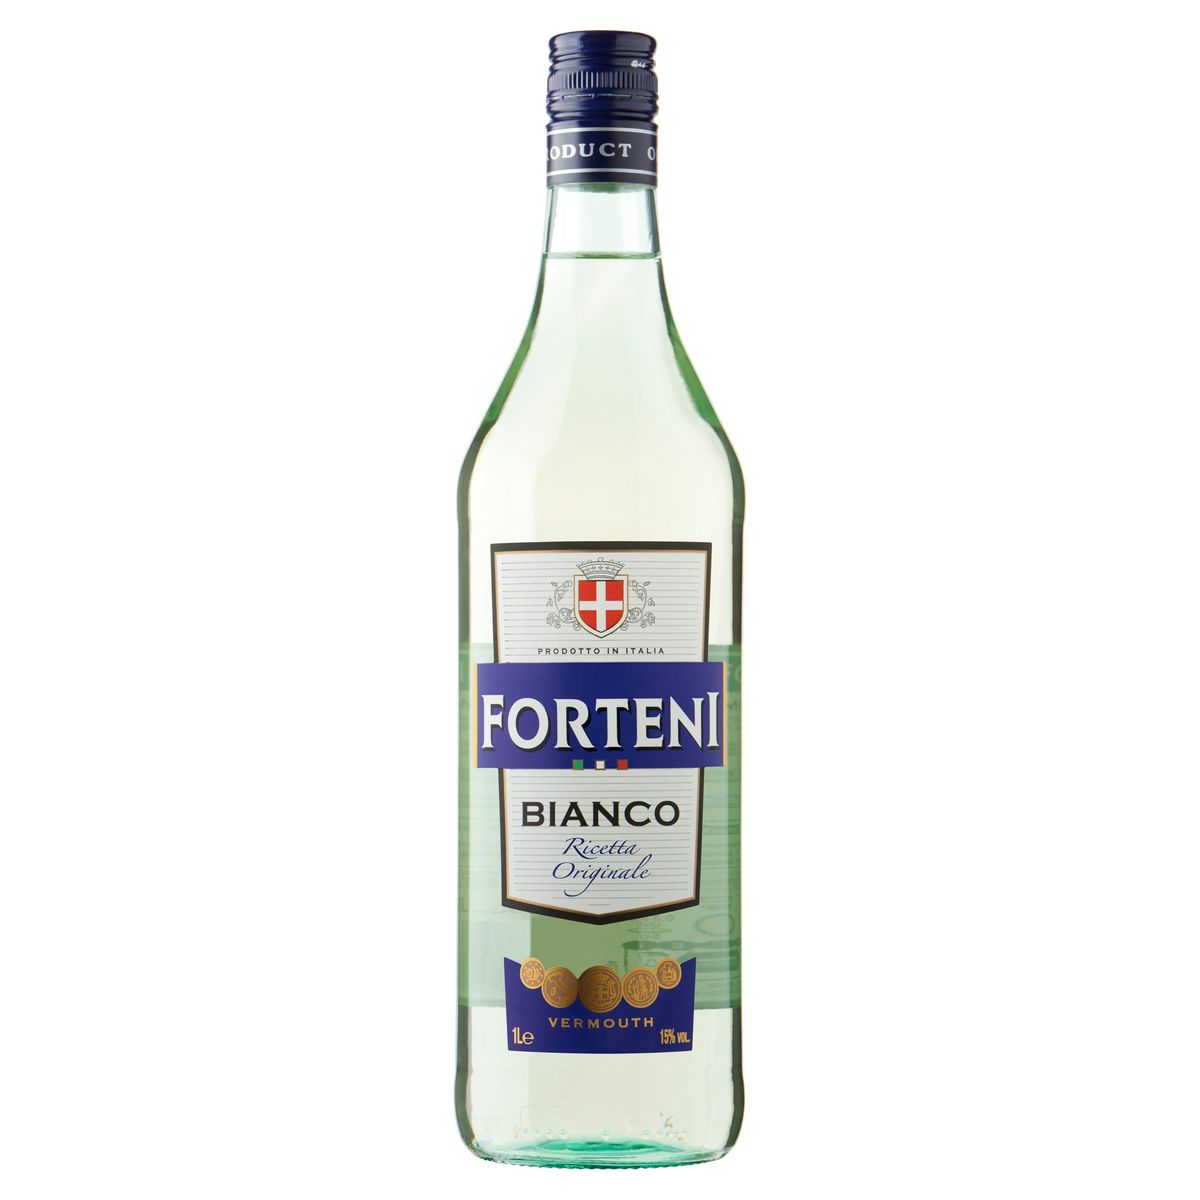 Forteni Bianco Vermouth 1 L